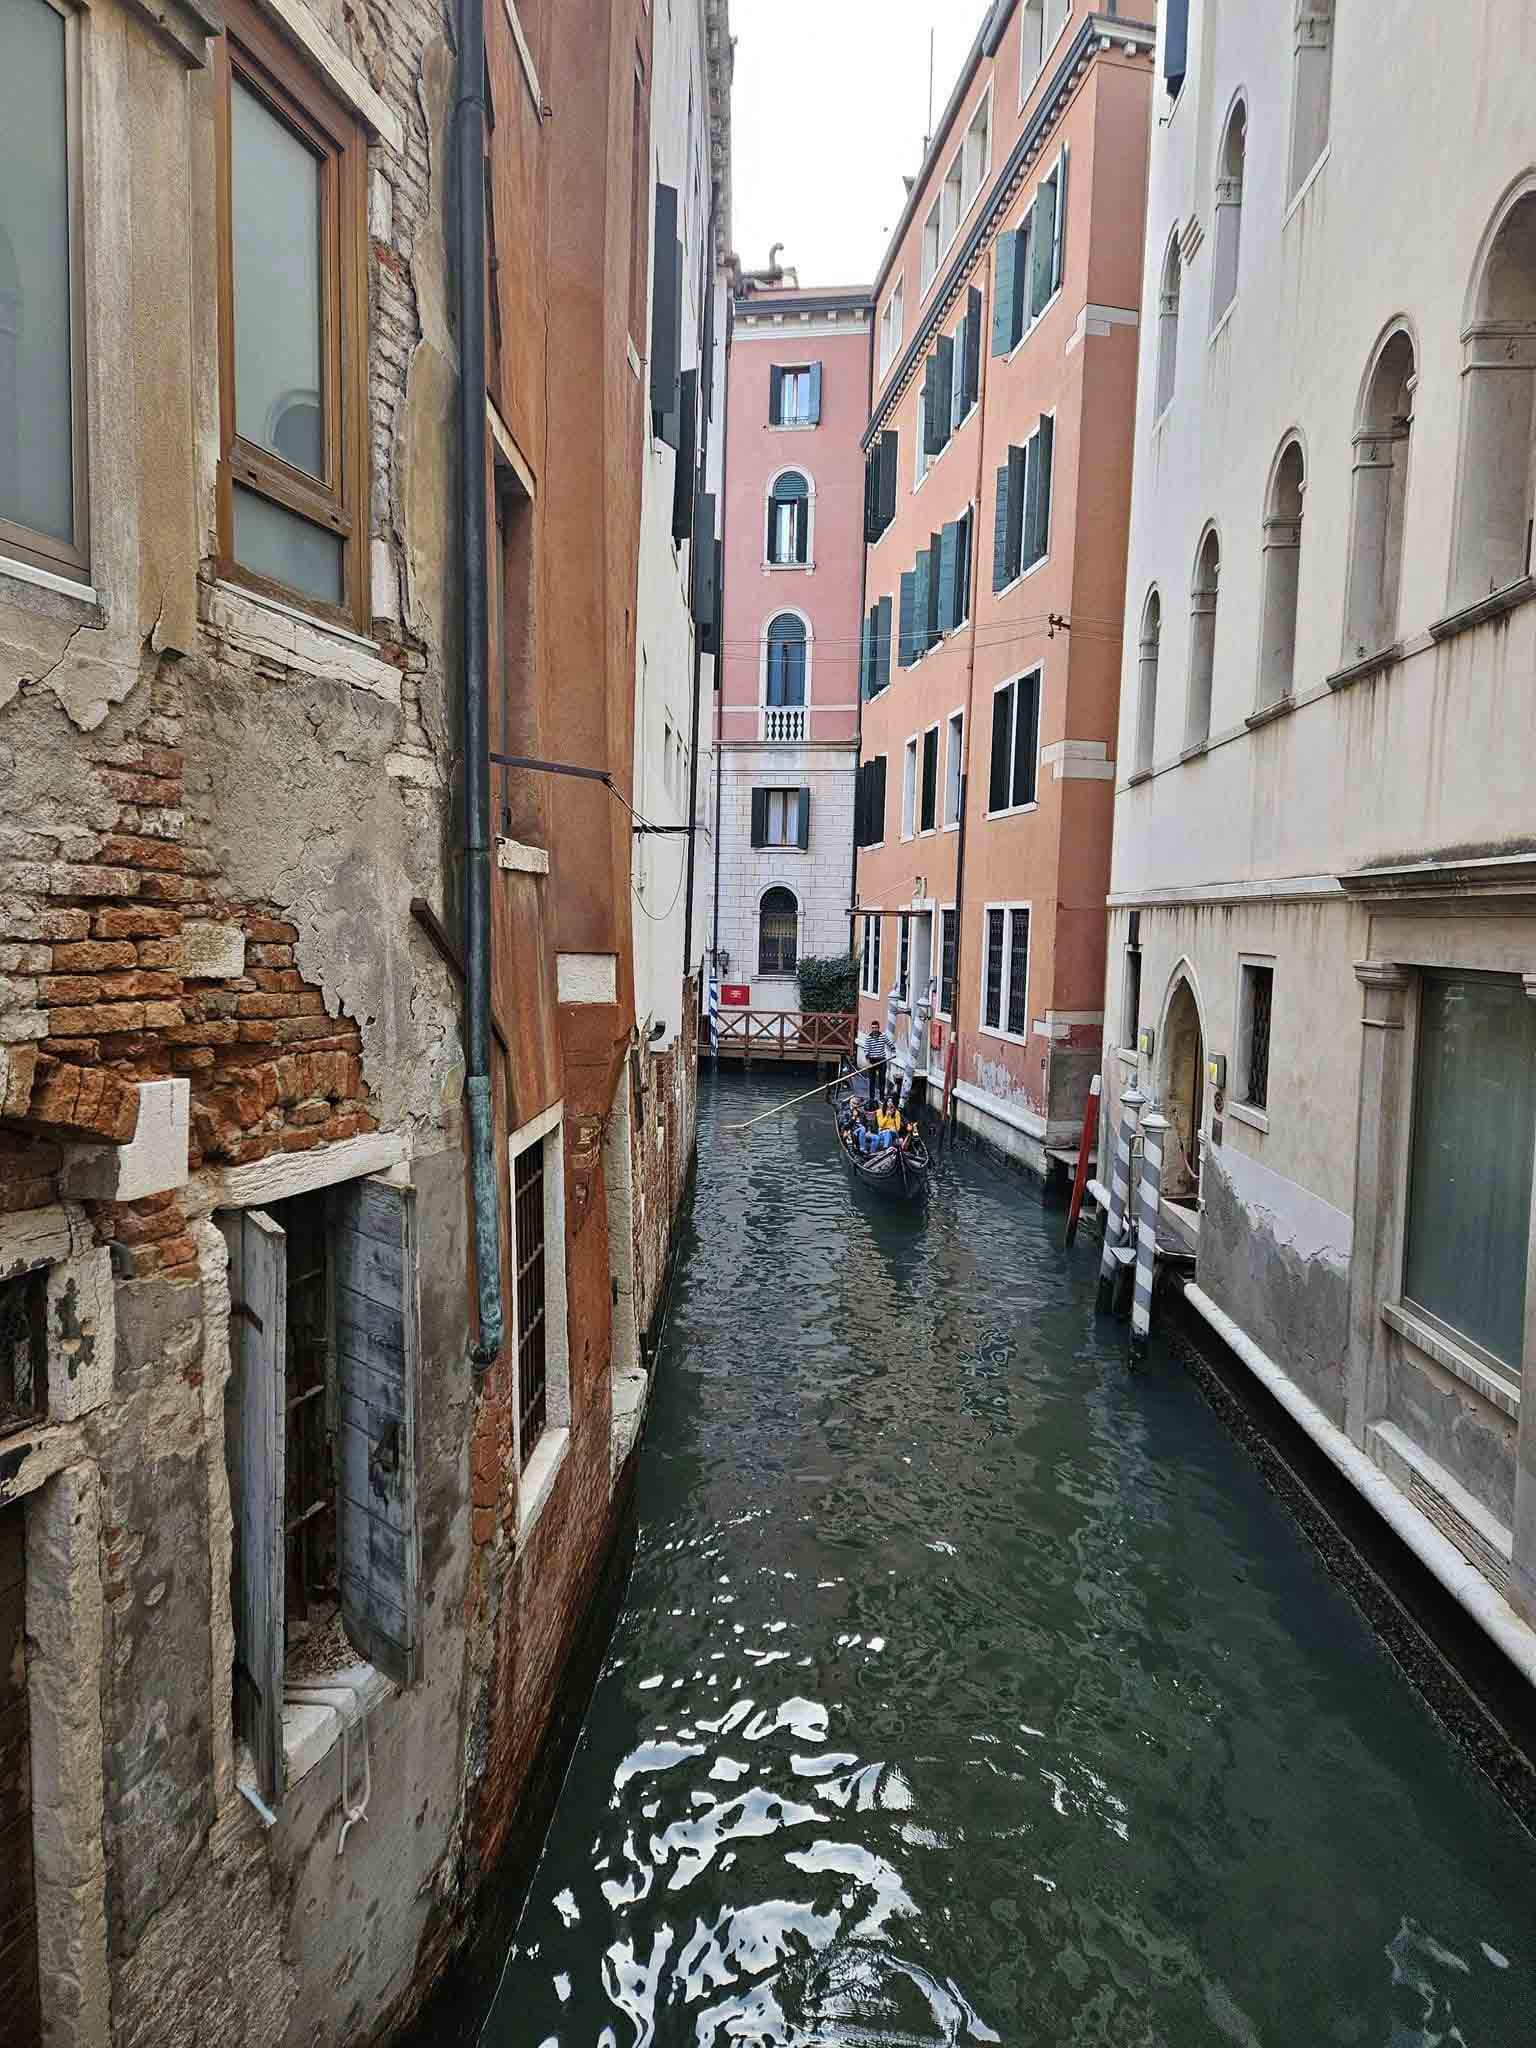 Rialto – cây cầu nổi tiếng nhất thành Venice